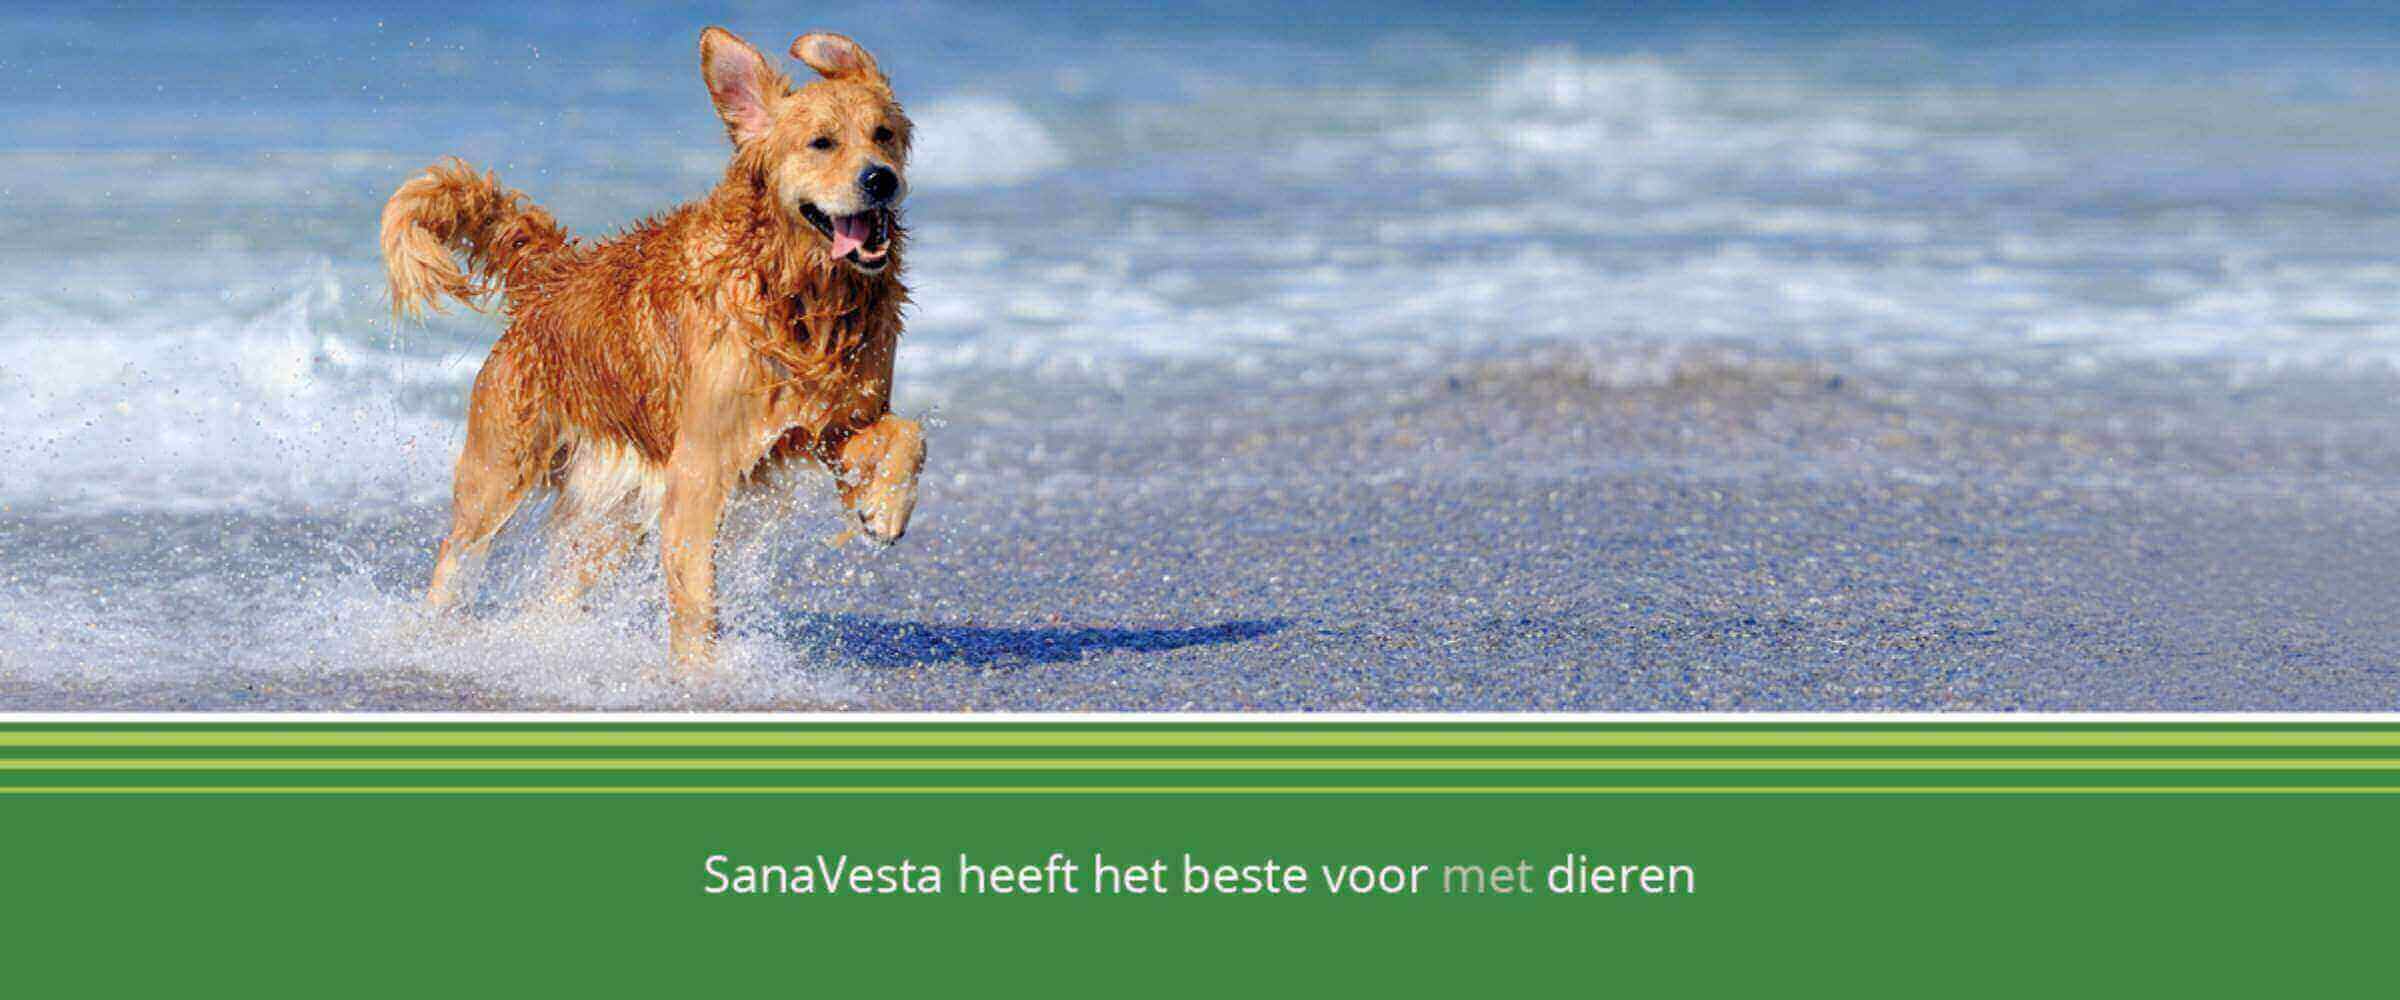 Sana-Vesta heeft het beste voor met dieren